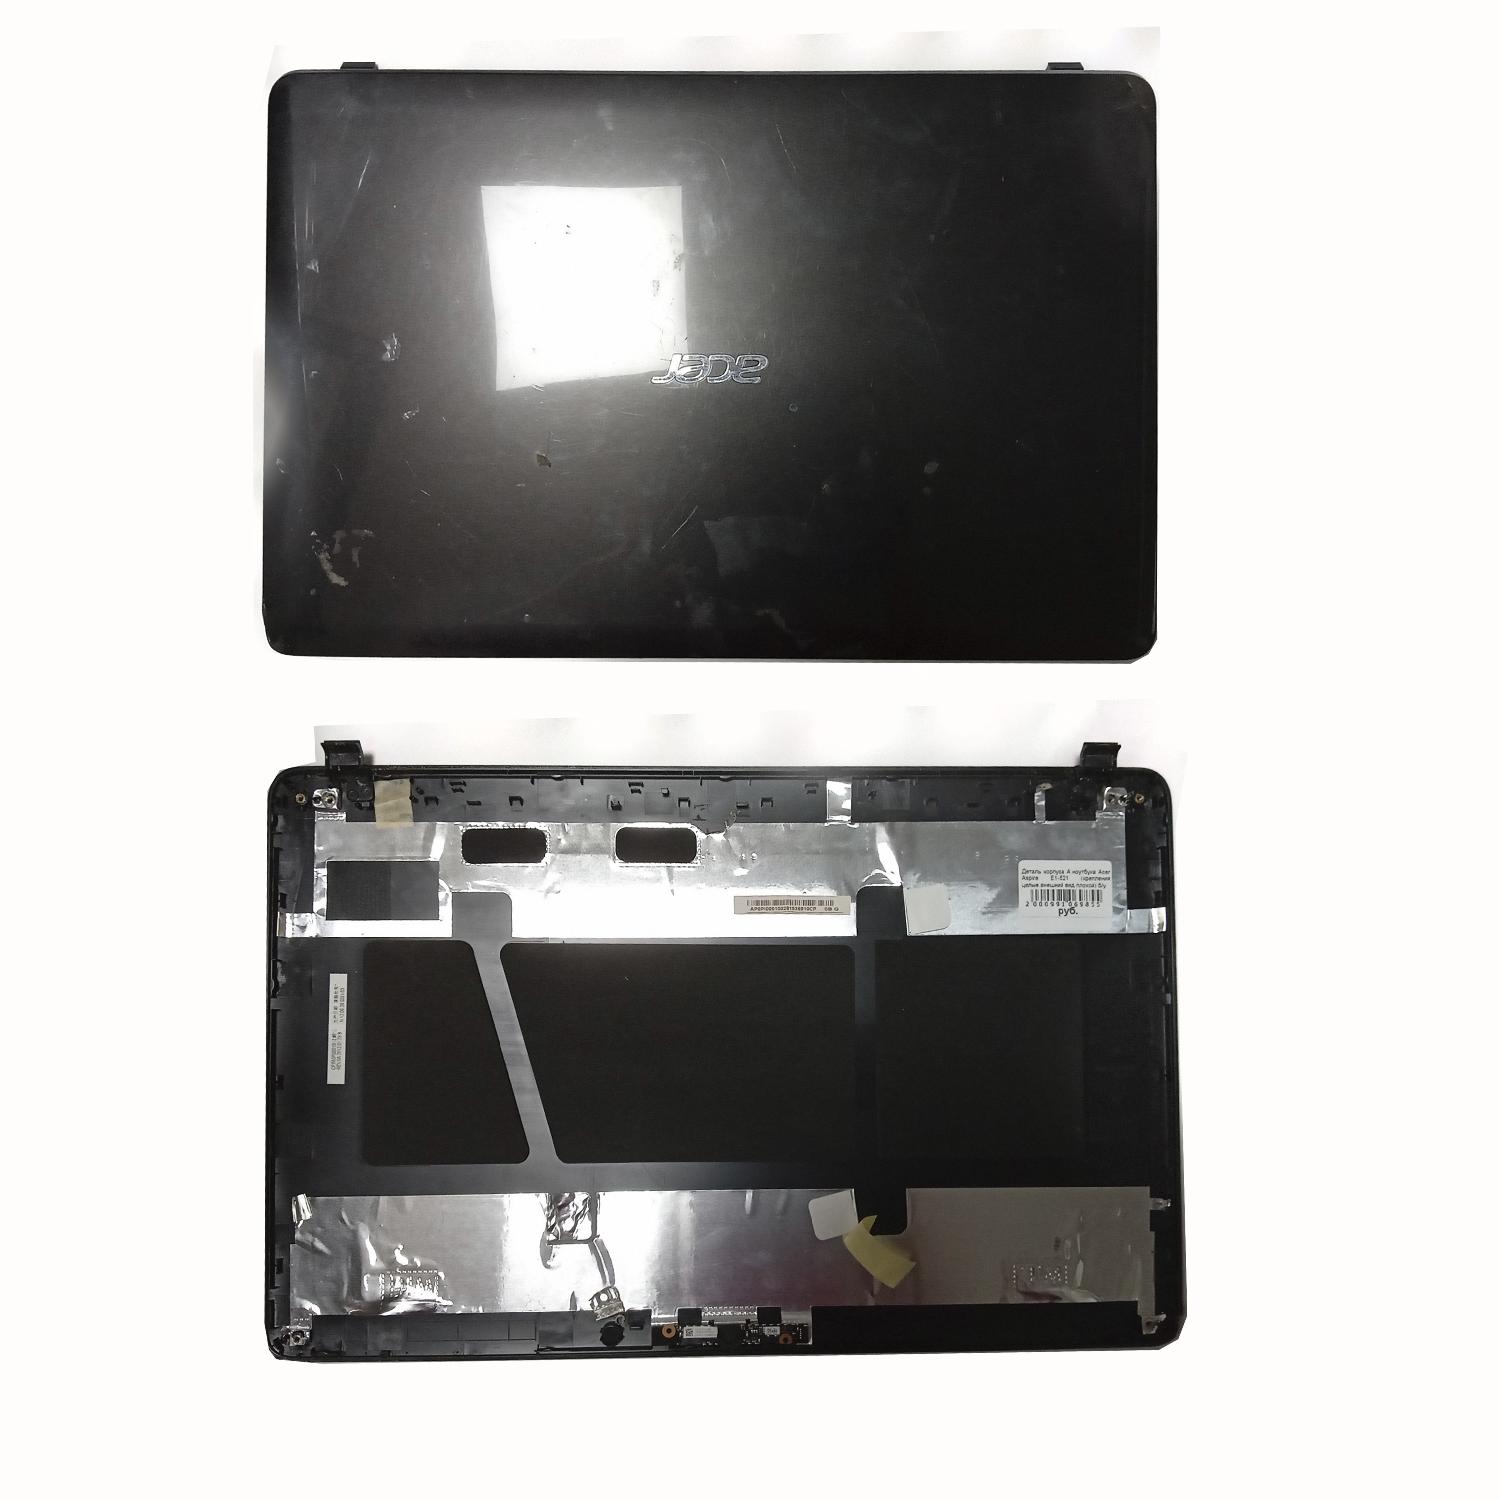 Деталь корпуса A ноутбука Acer Aspire E1-521 (крепления целые.внешний вид плохой) б/у